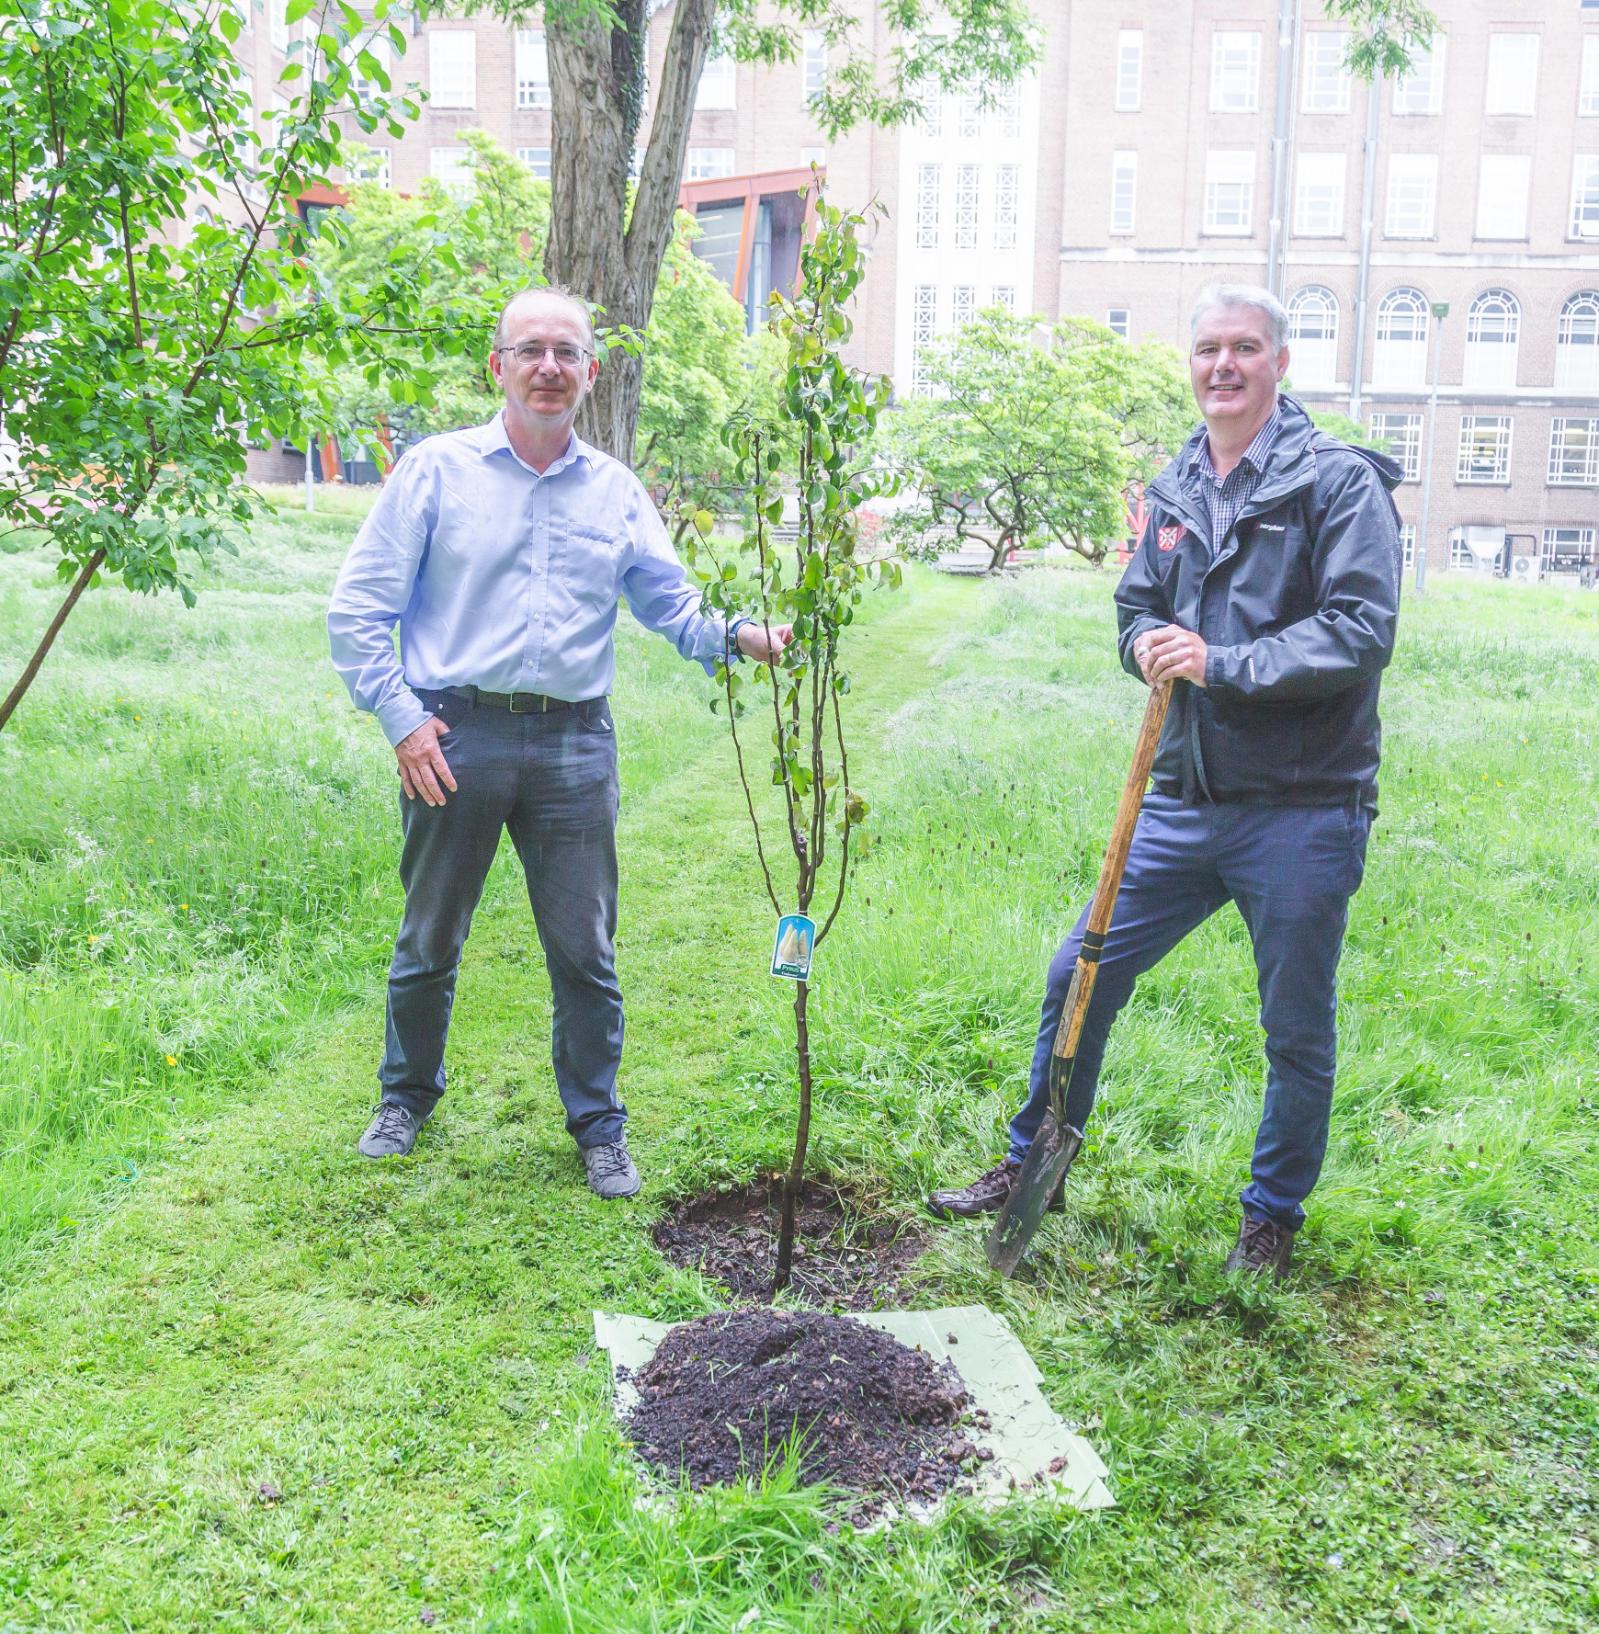 Professor David Rooney and Tony Schmidt standing beside a tree